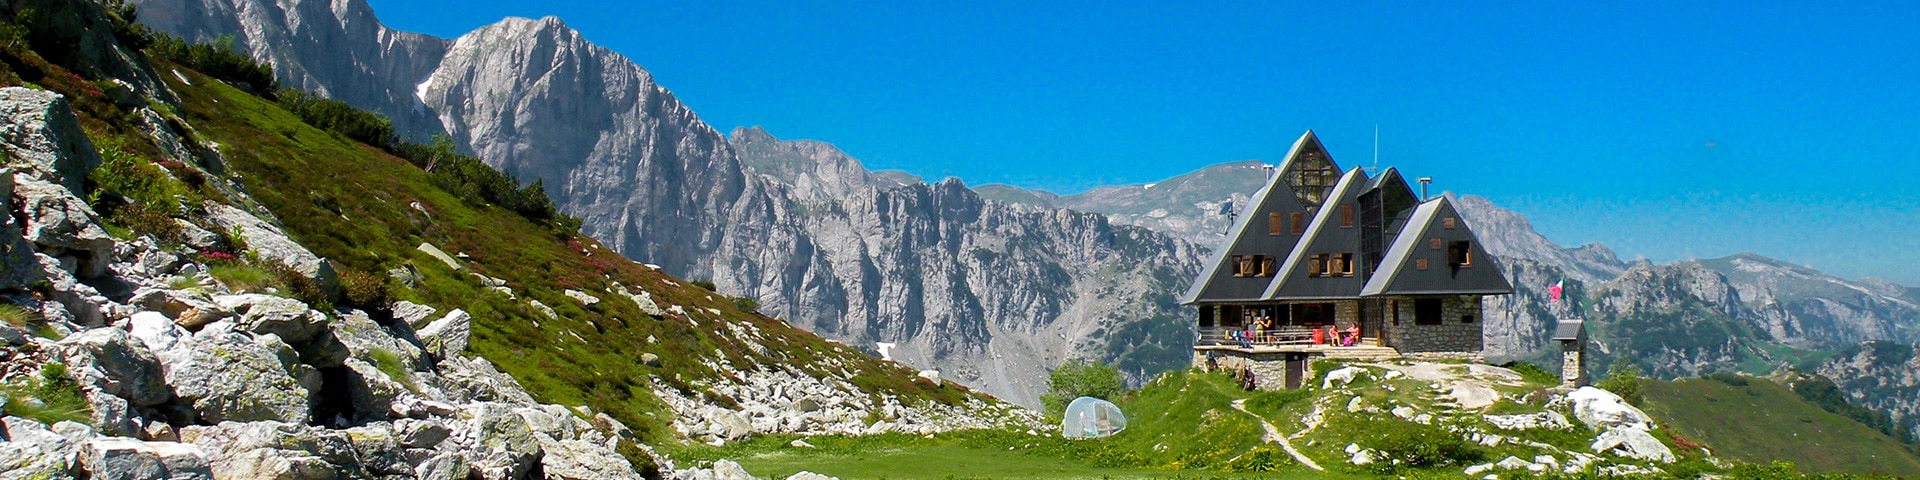 Alpi Marittime hiking, Italy